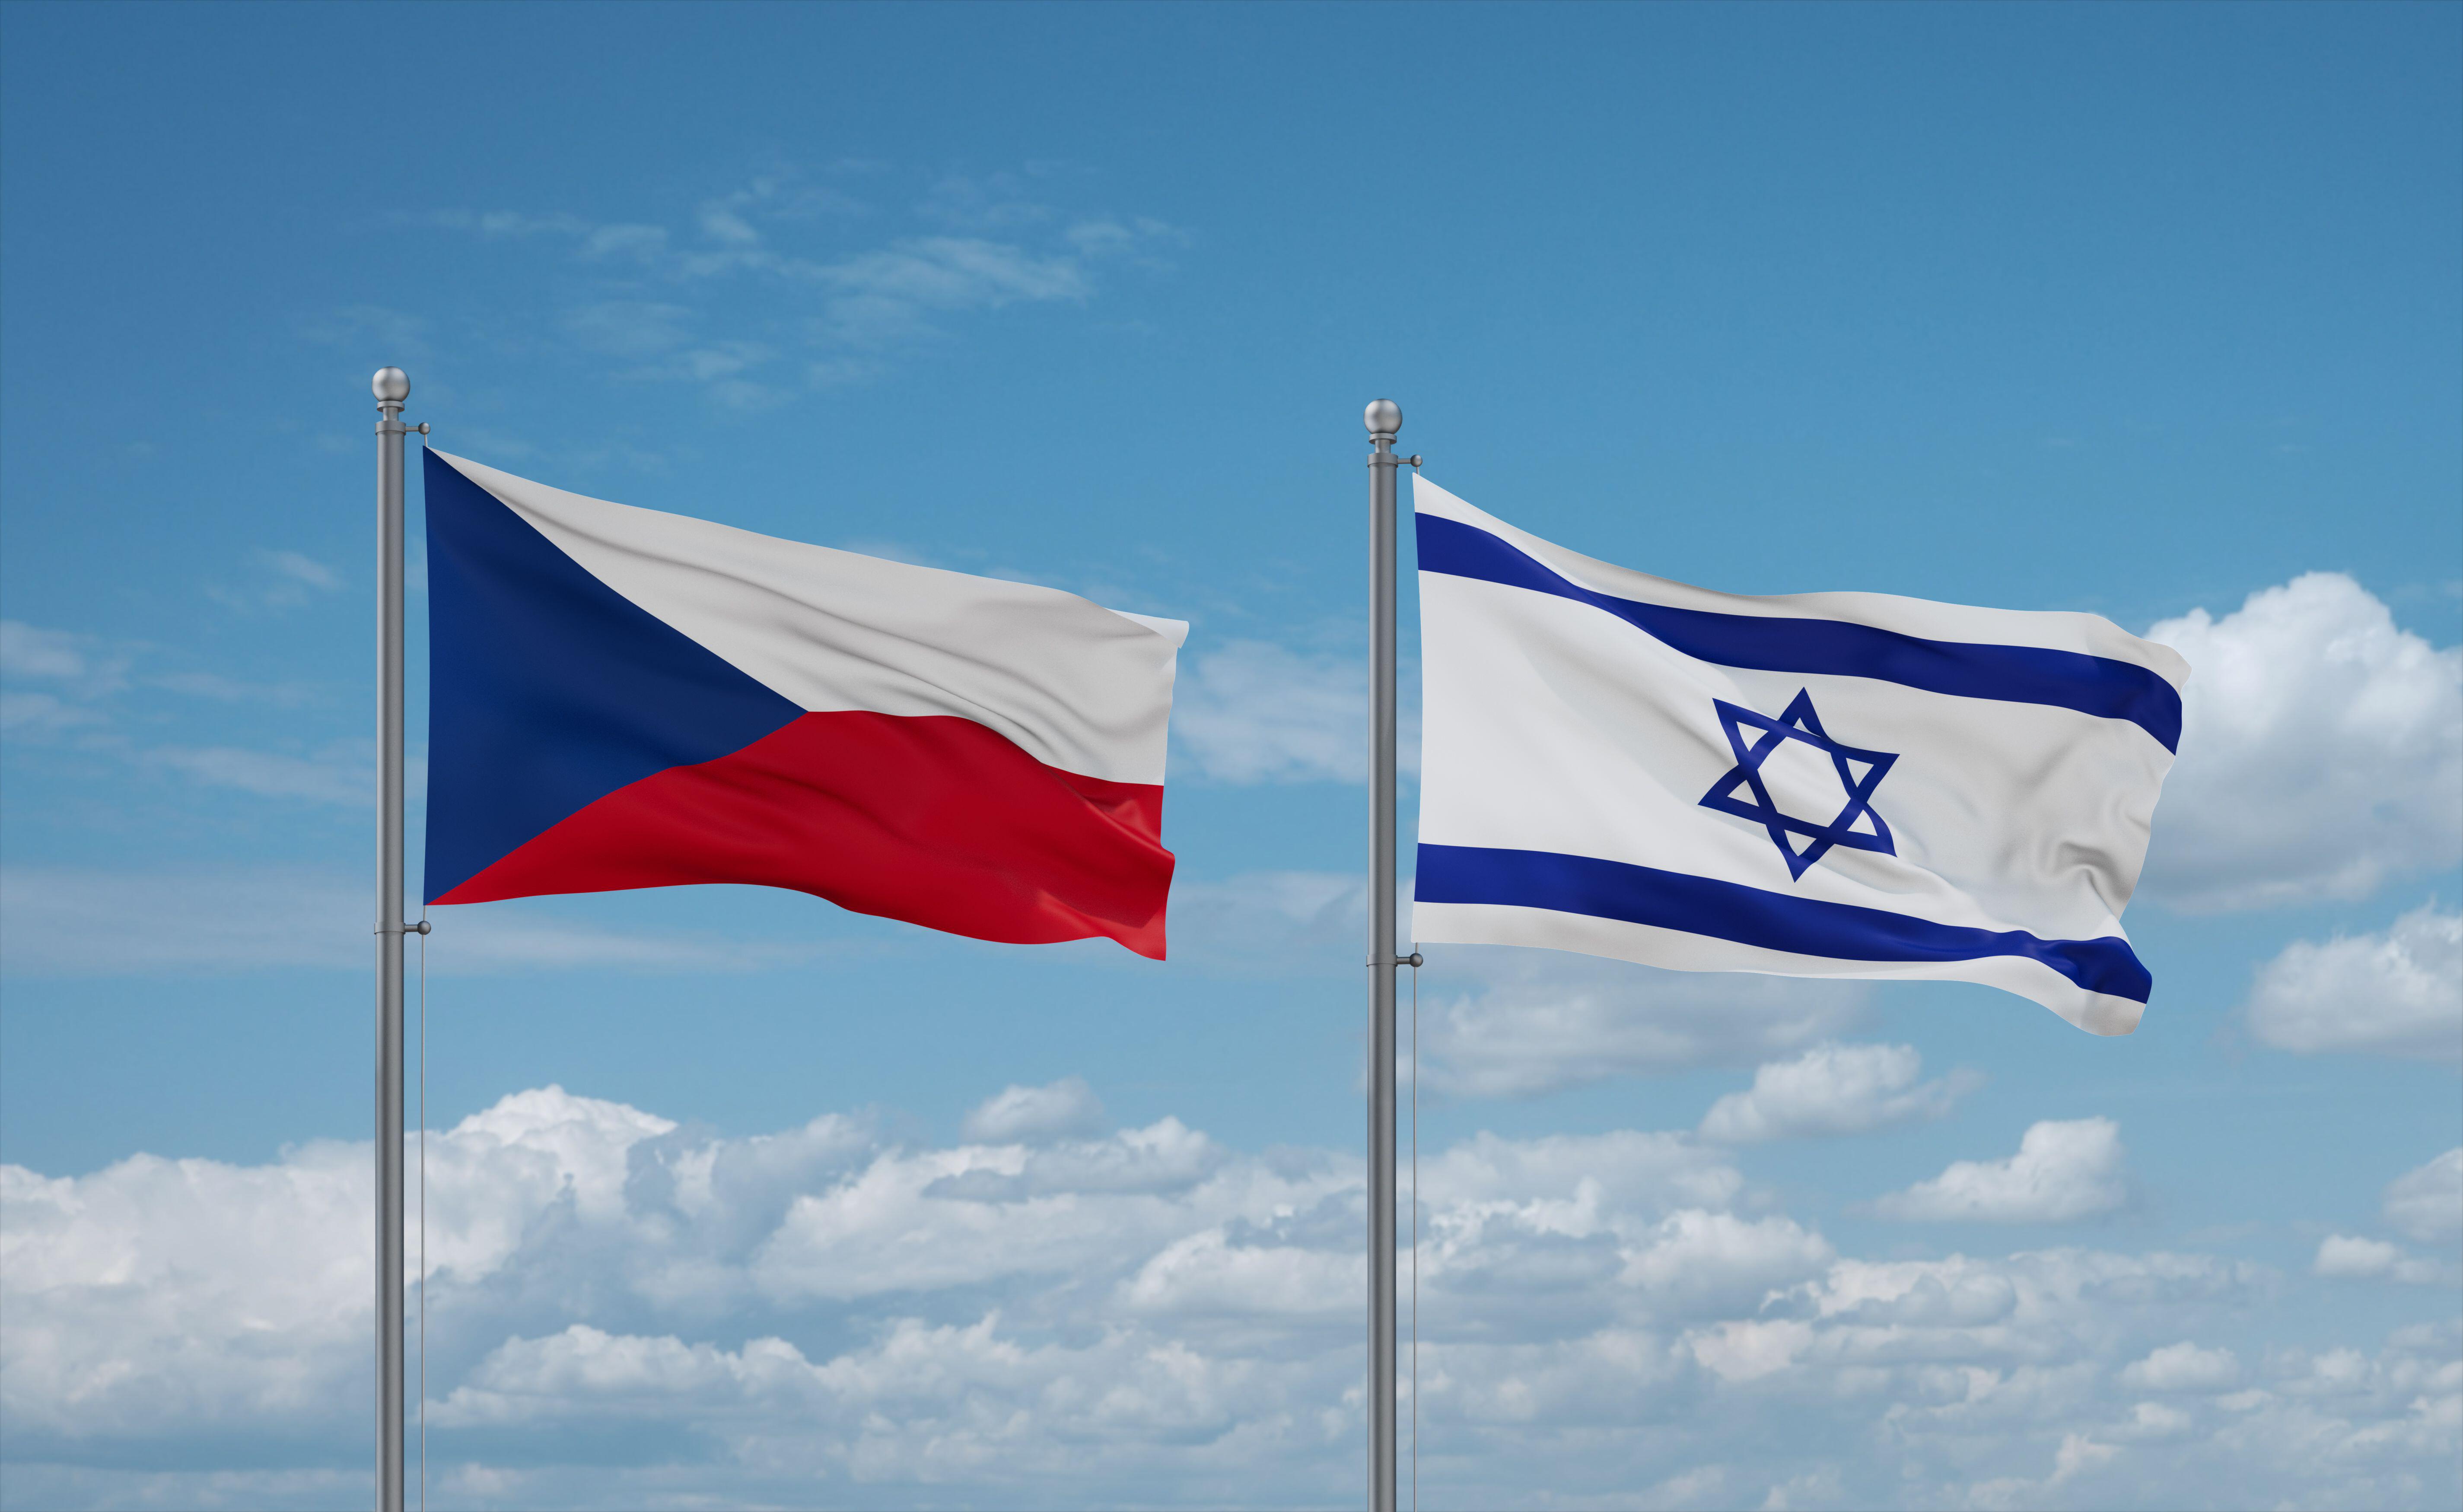 إسرائيل وجمهورية التشيك تعززان الشراكة السيبرانية وسط حرب حماس البحث العمودي. منظمة العفو الدولية.